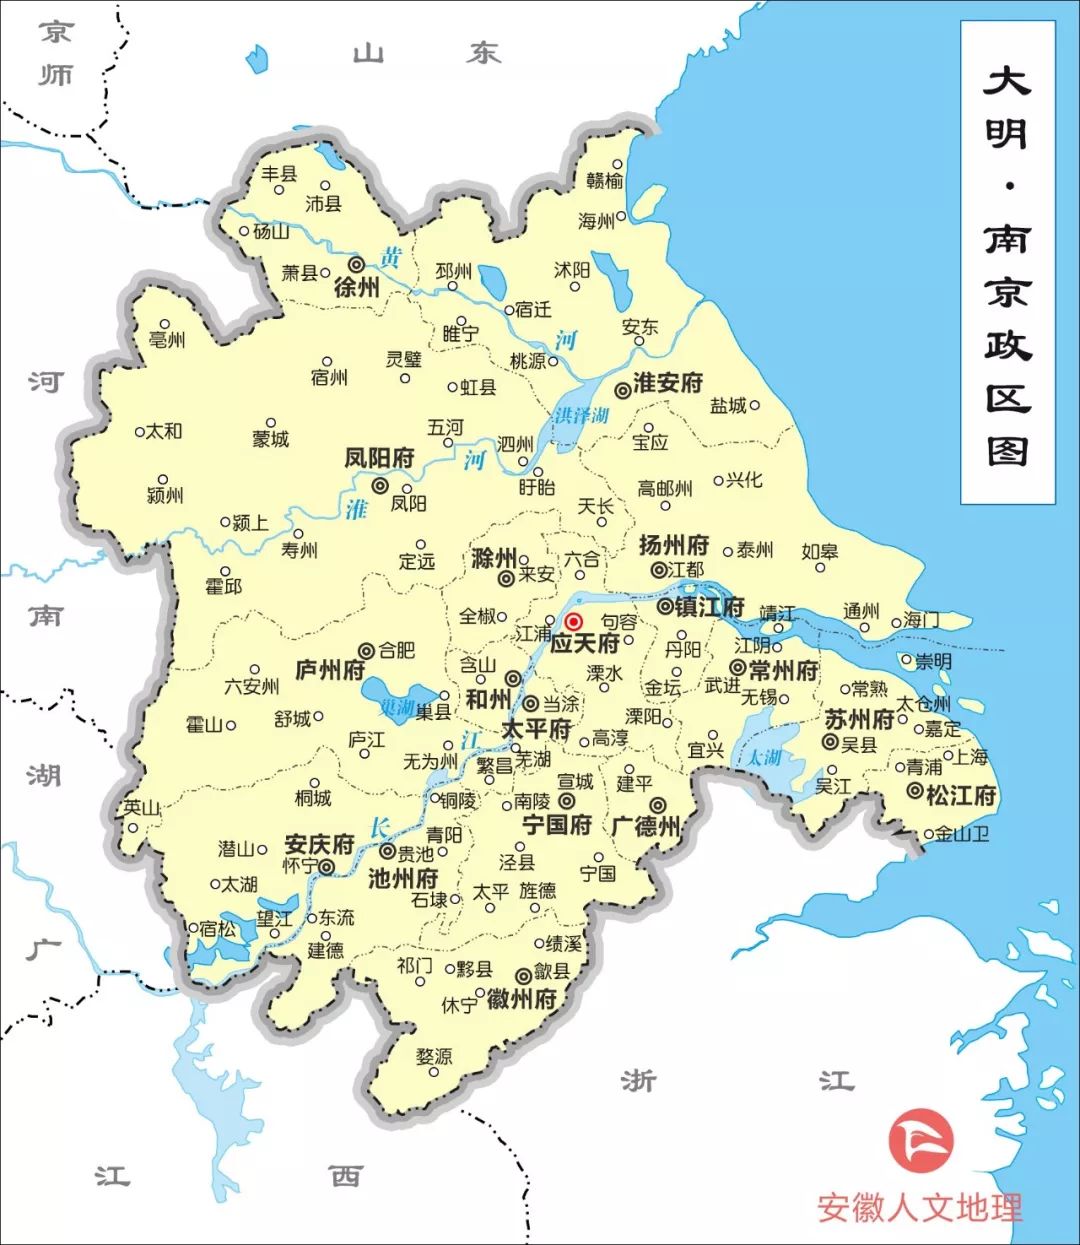 行区划,安徽境内有徐州的砀山和萧县两县,凤阳,庐州,安庆,池州,宁国